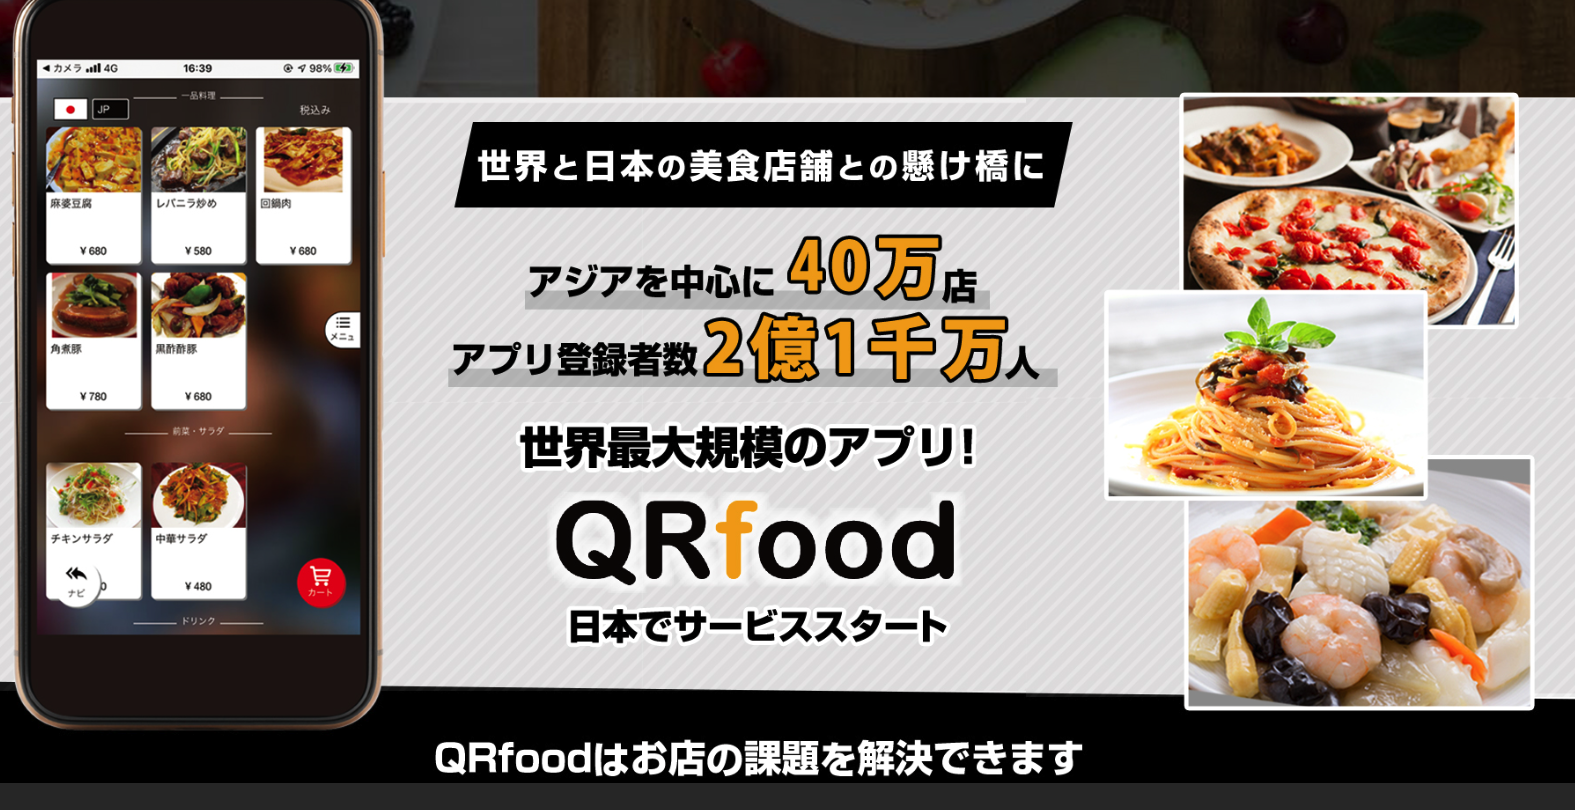 【飲食店向け】業界最大規模のQRコード型セルフオーダーシステム/QRフード